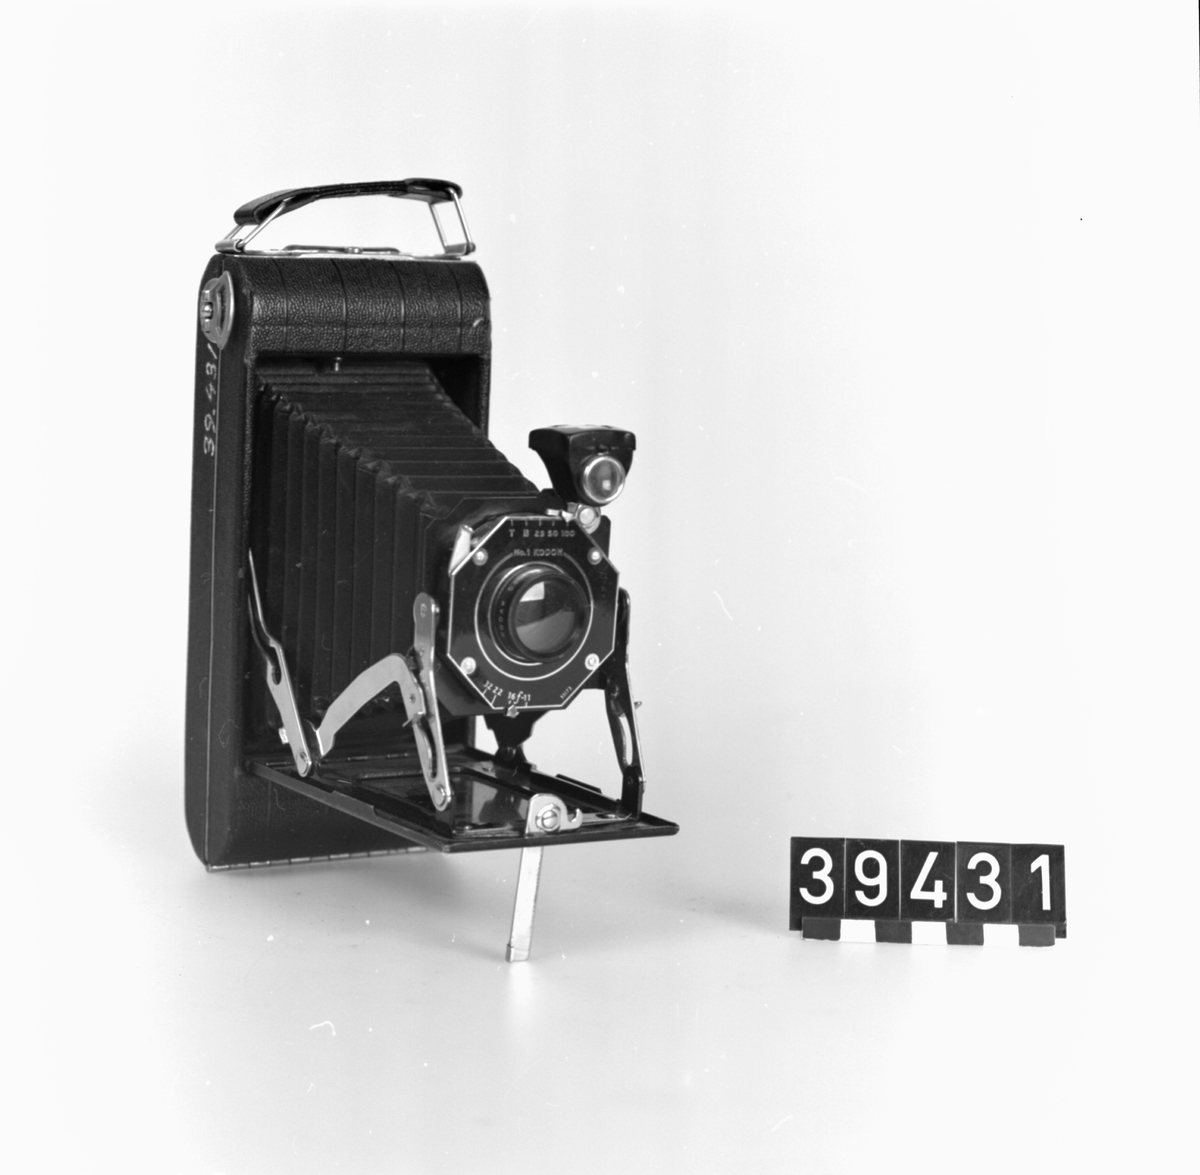 Bälgkamera, för rullfilm, svartlackerat hus, bälg av papp, för rullfilm 616. neg. format 6.5 x 11 cm. Slutare: No 1 Kodon: T,B, 25, 50, 100. Bländare: f 11, 16, 22, 32.